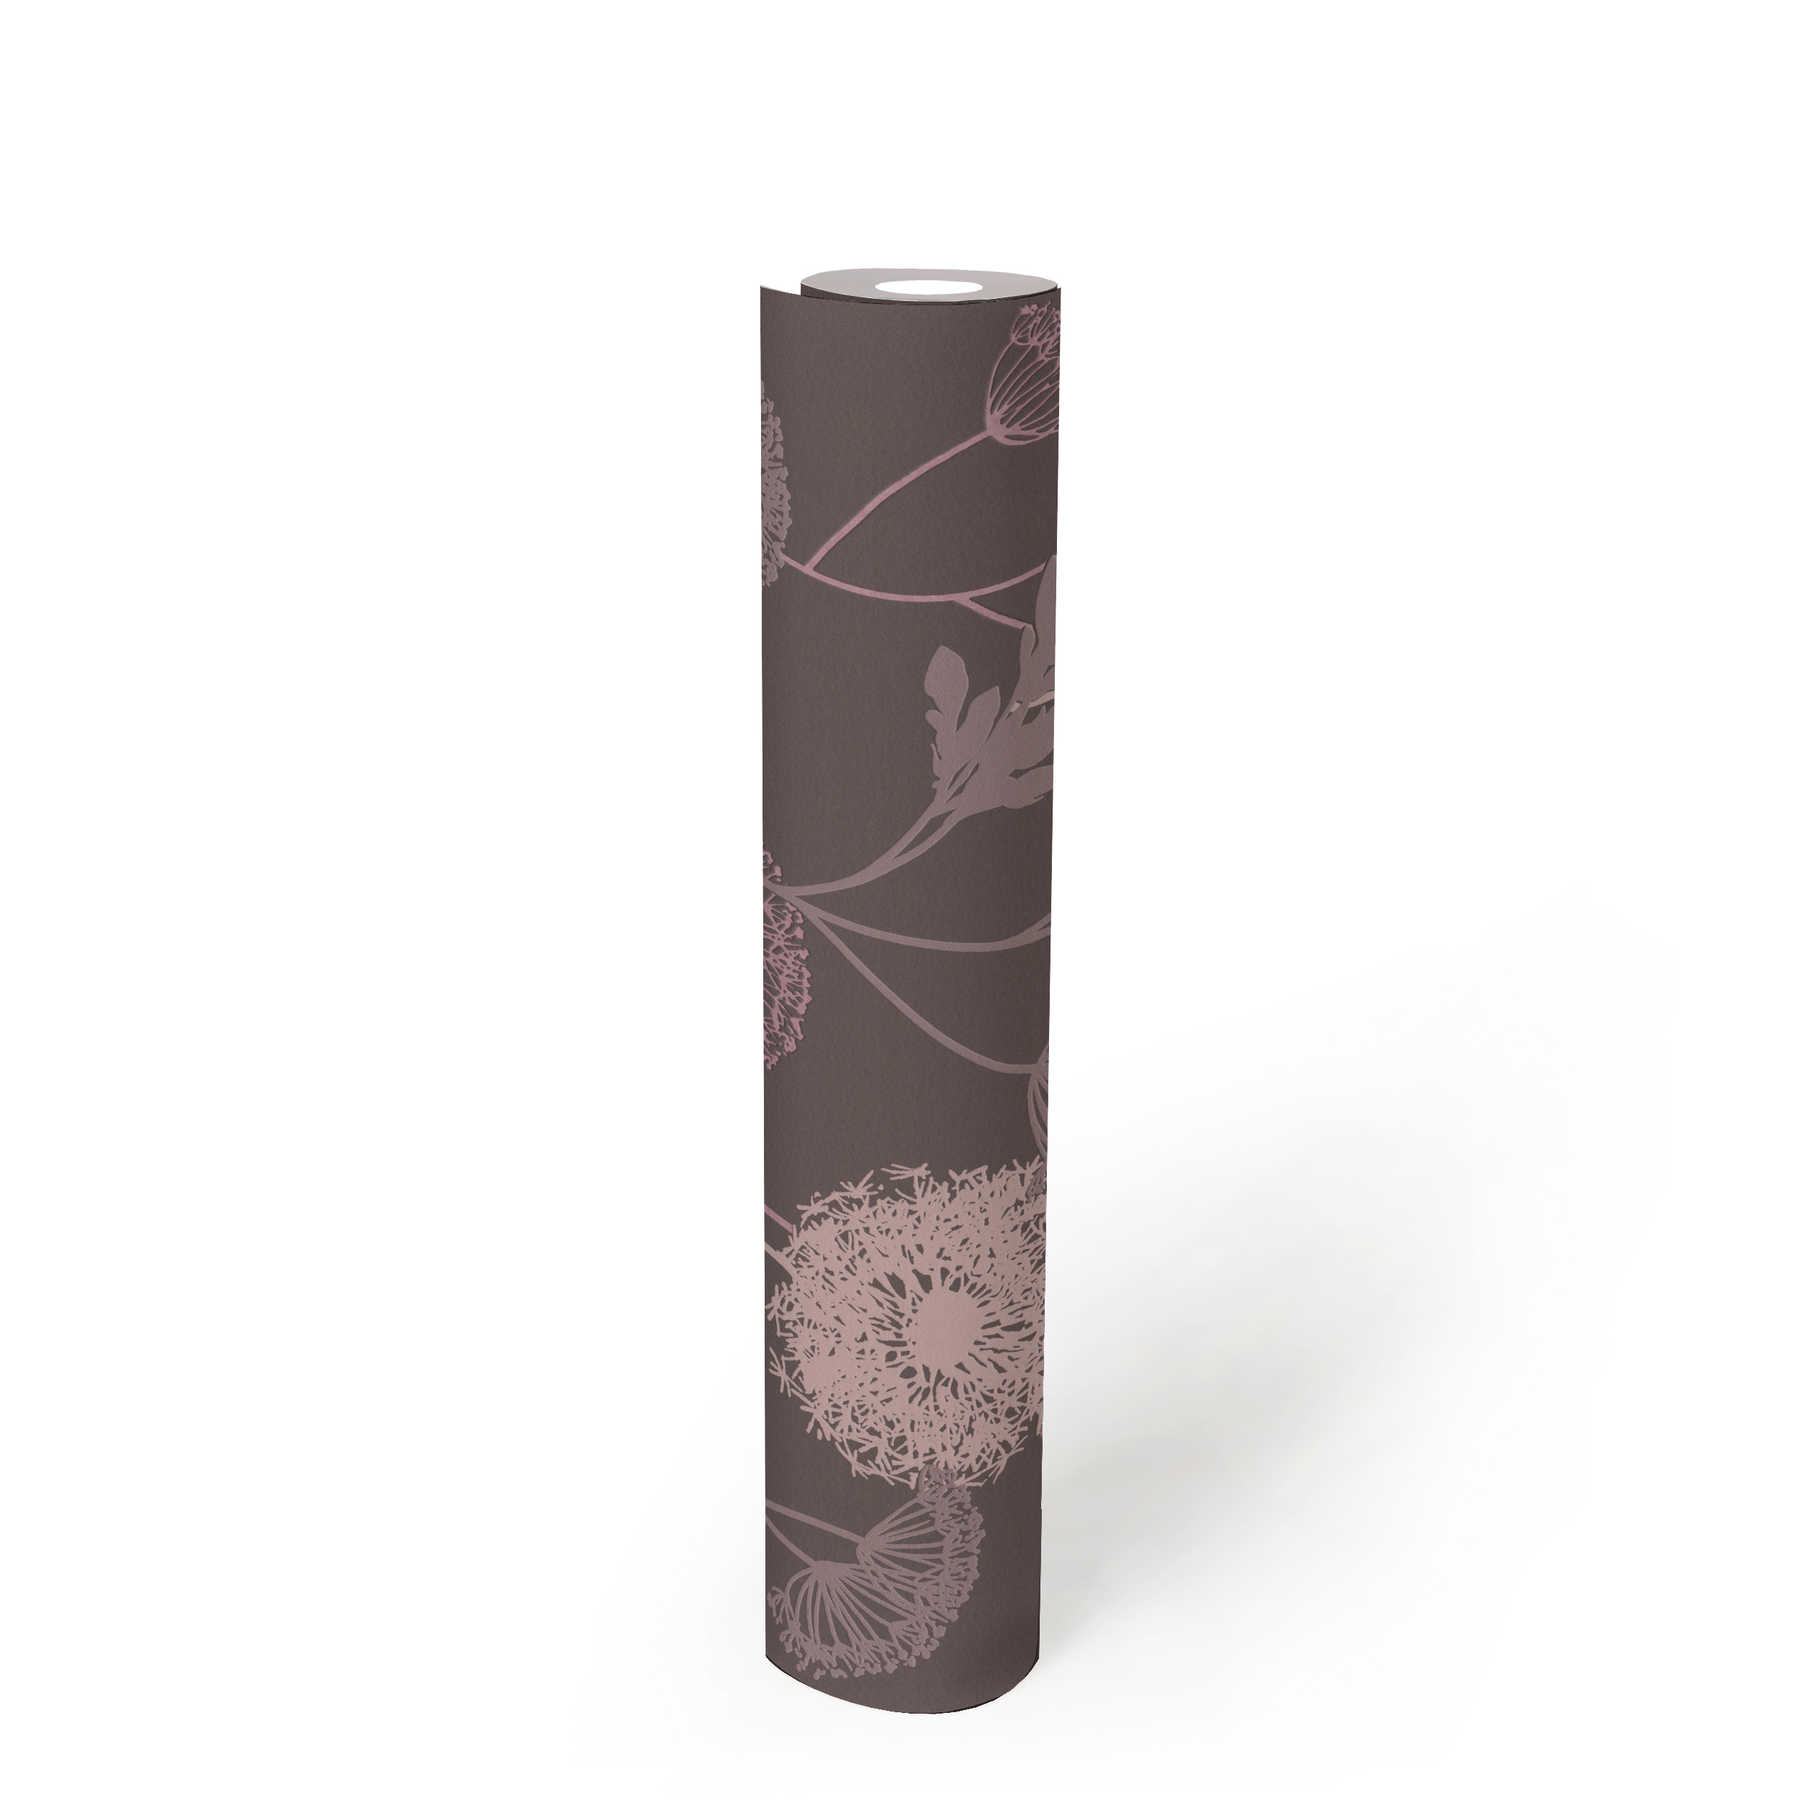             Strukturtapete mit Blüten-Muster in warmen Farben – Braun, Rosa, Beige
        